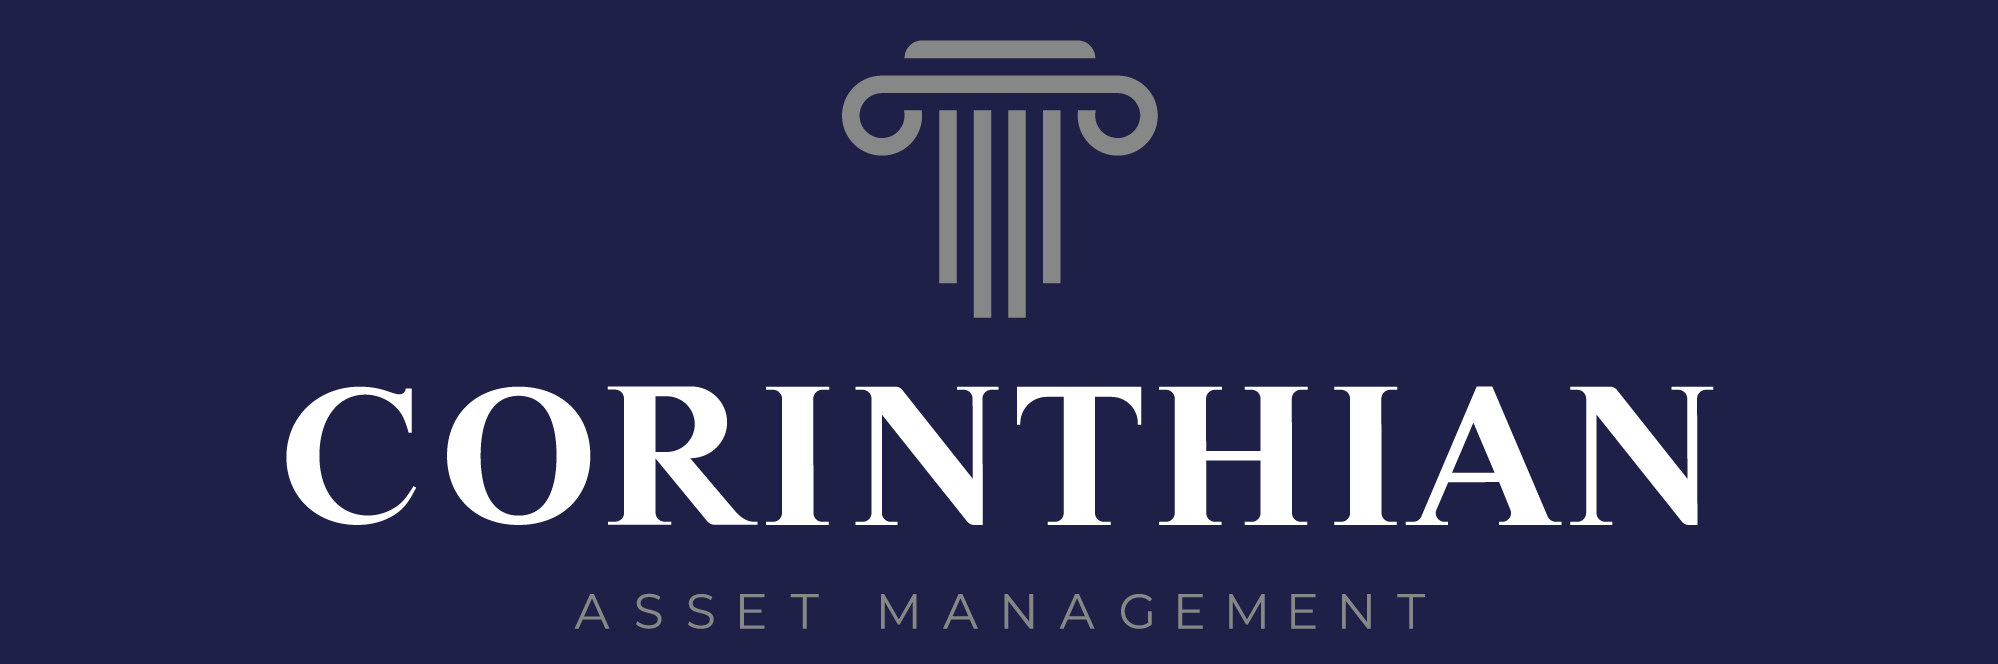 Corinthian Asset Management logo